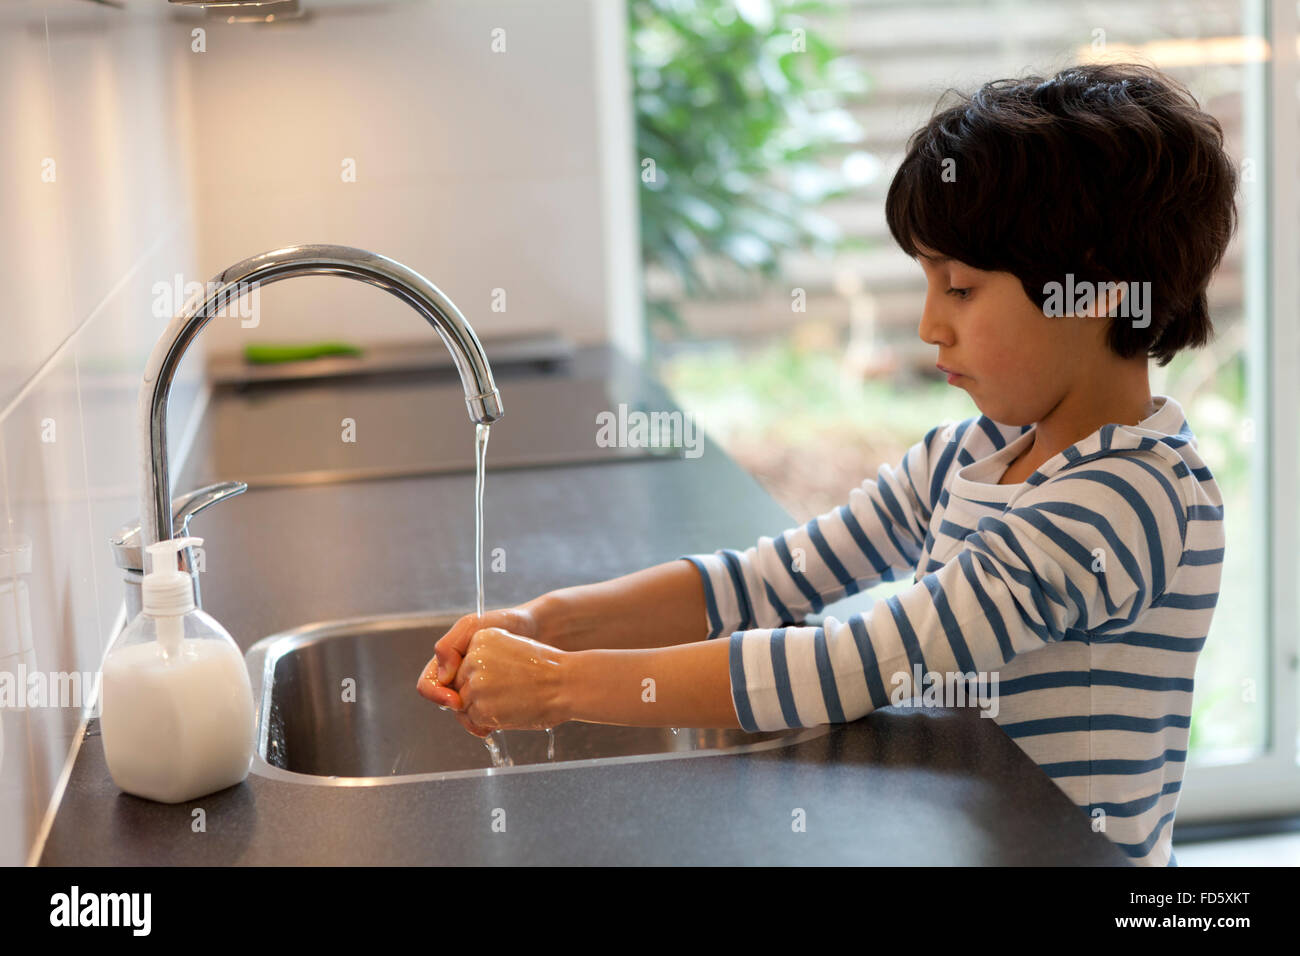 Bambino di otto anni lavaggio delle mani in cucina Foto Stock